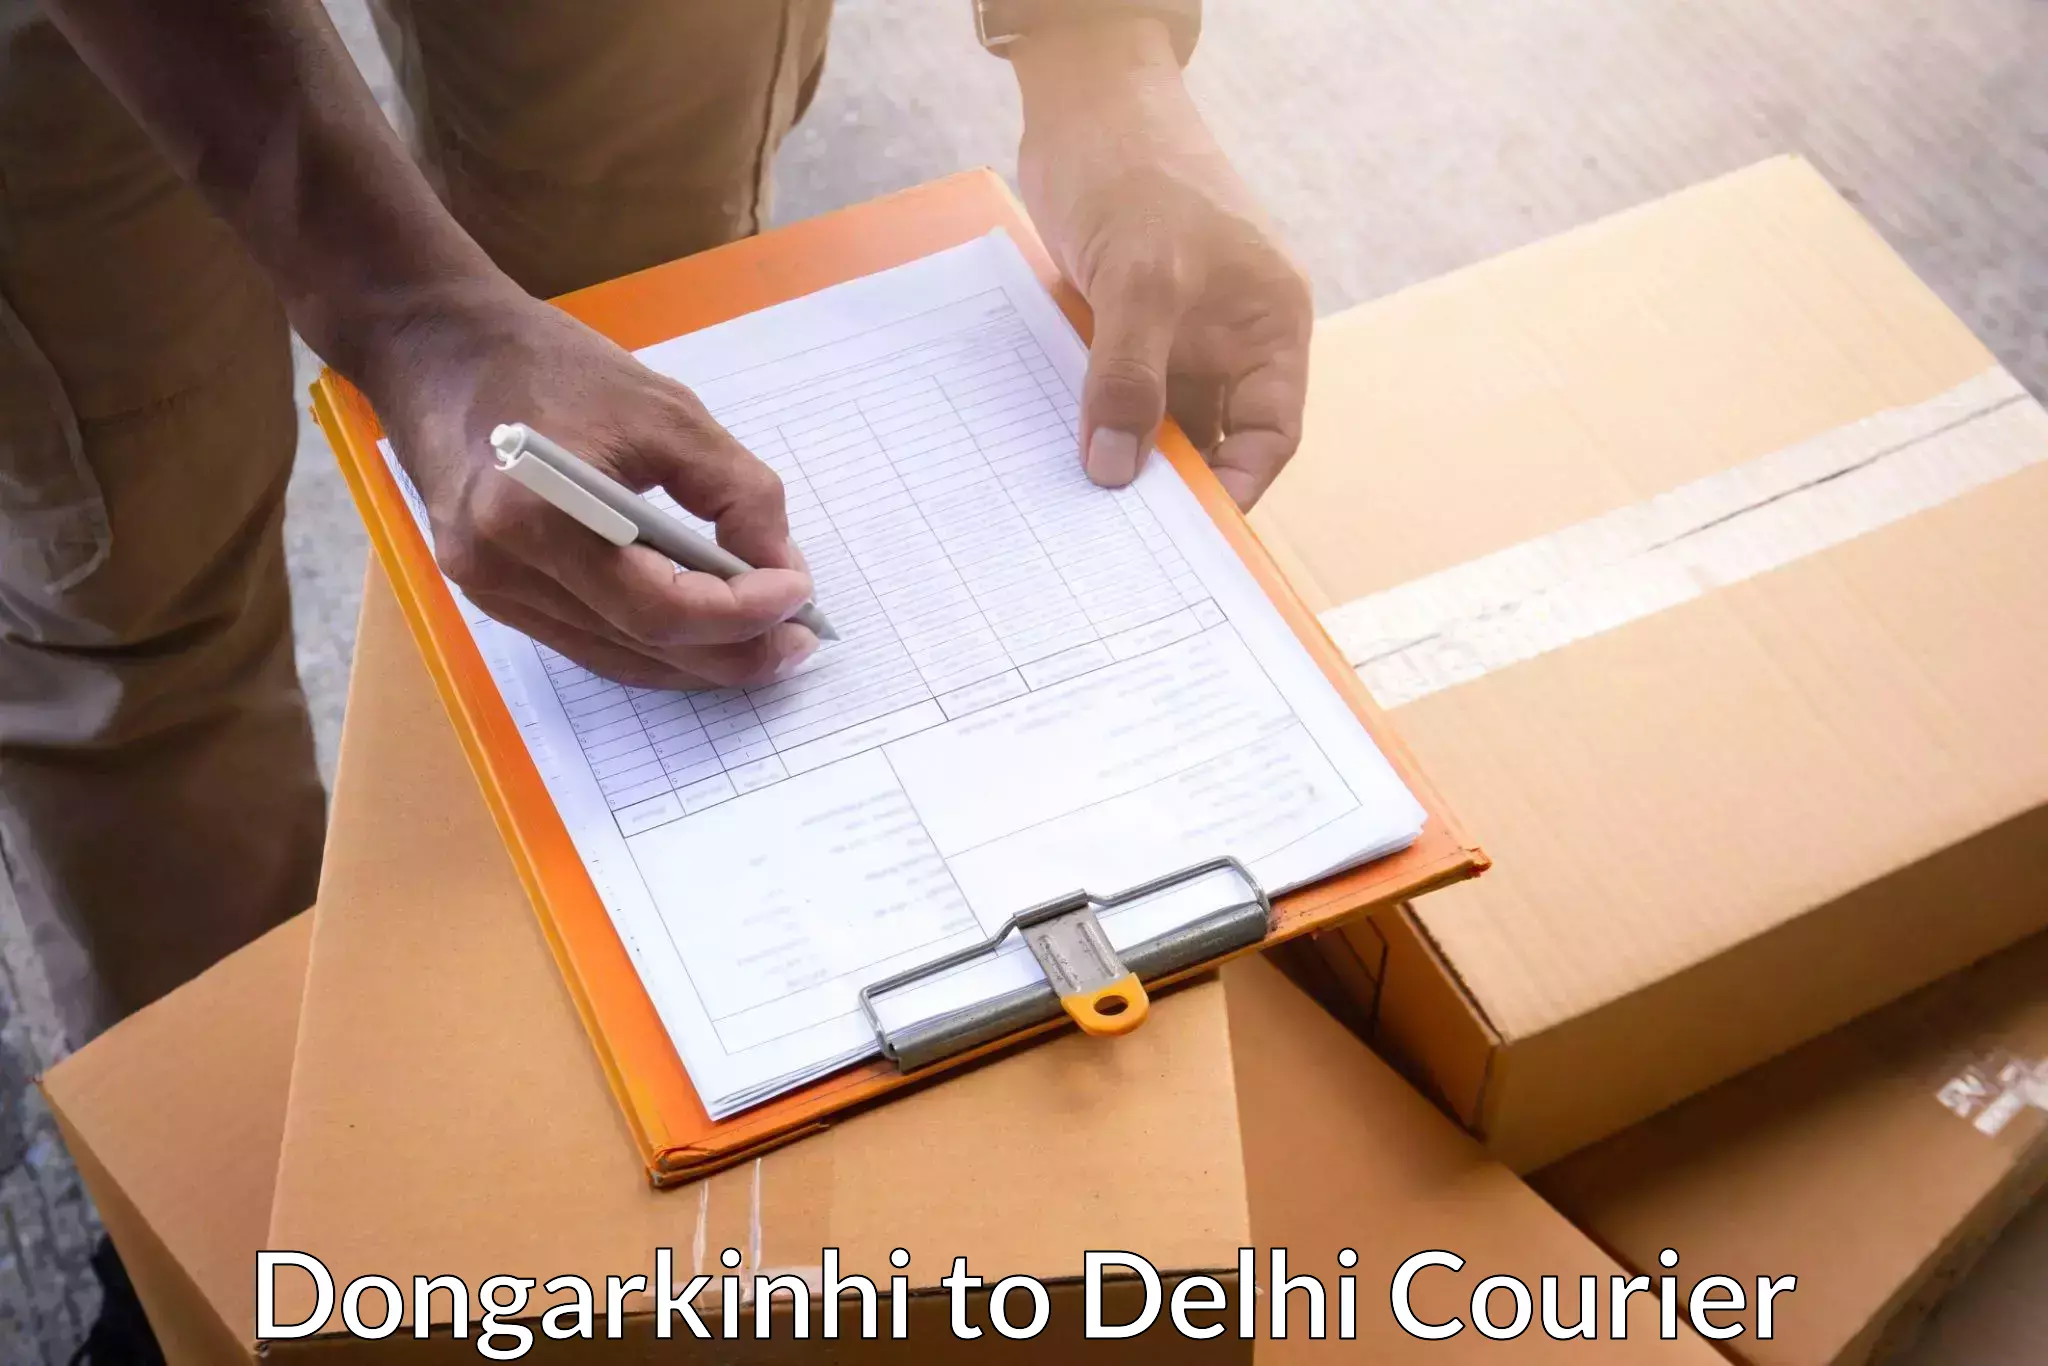 Courier services Dongarkinhi to Sarojini Nagar